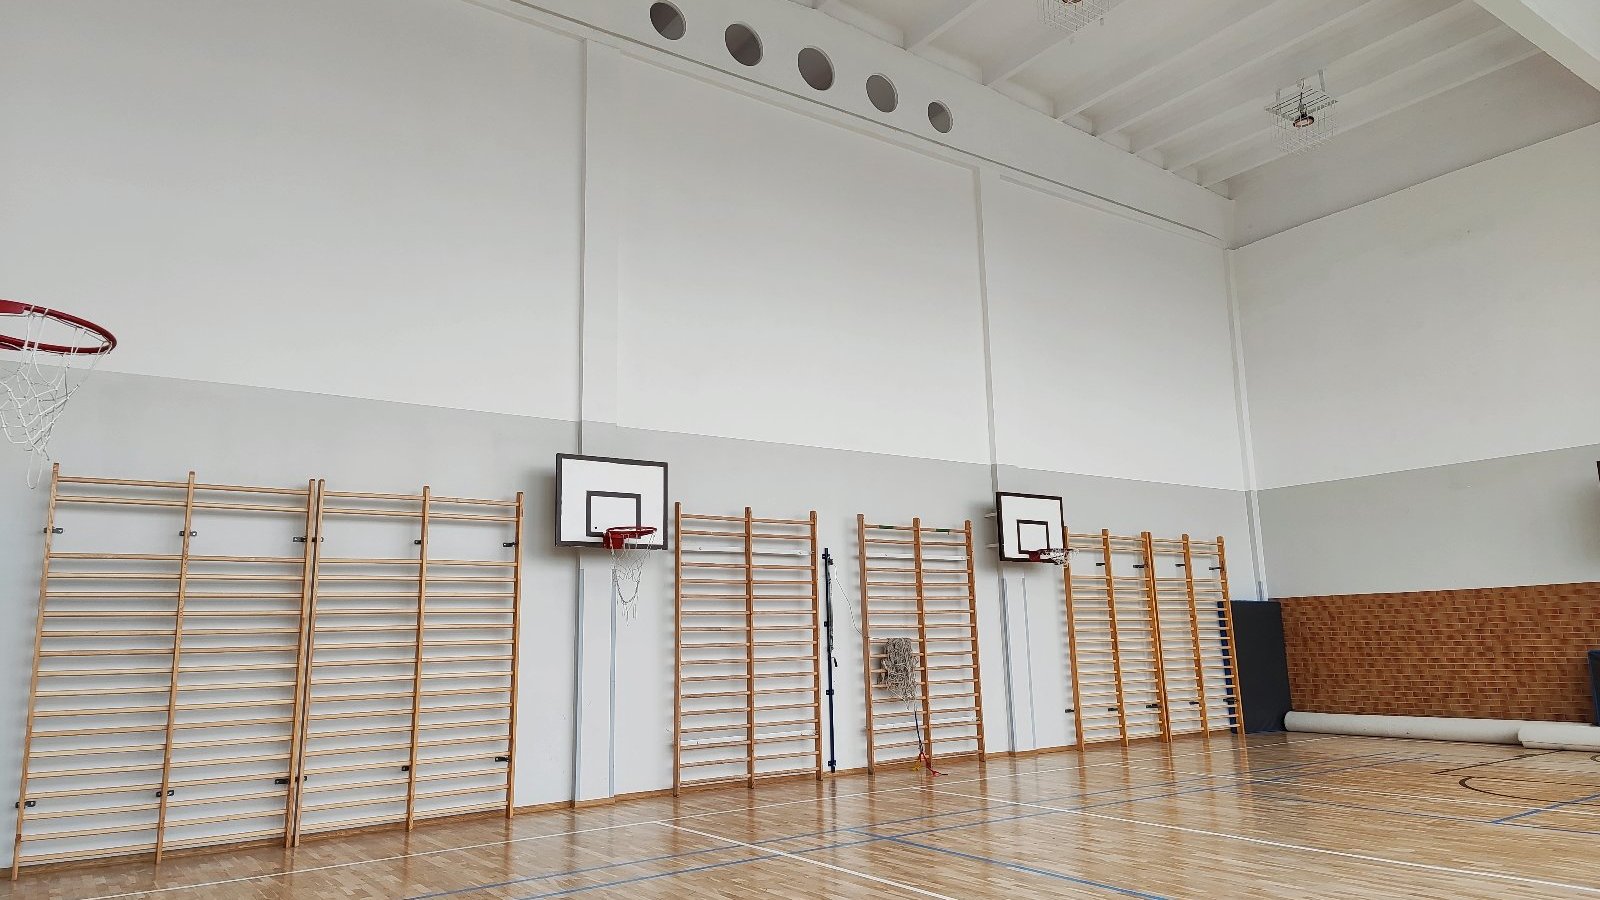 Zdjęcie przedstawia wnętrze sali gimnastycznej.